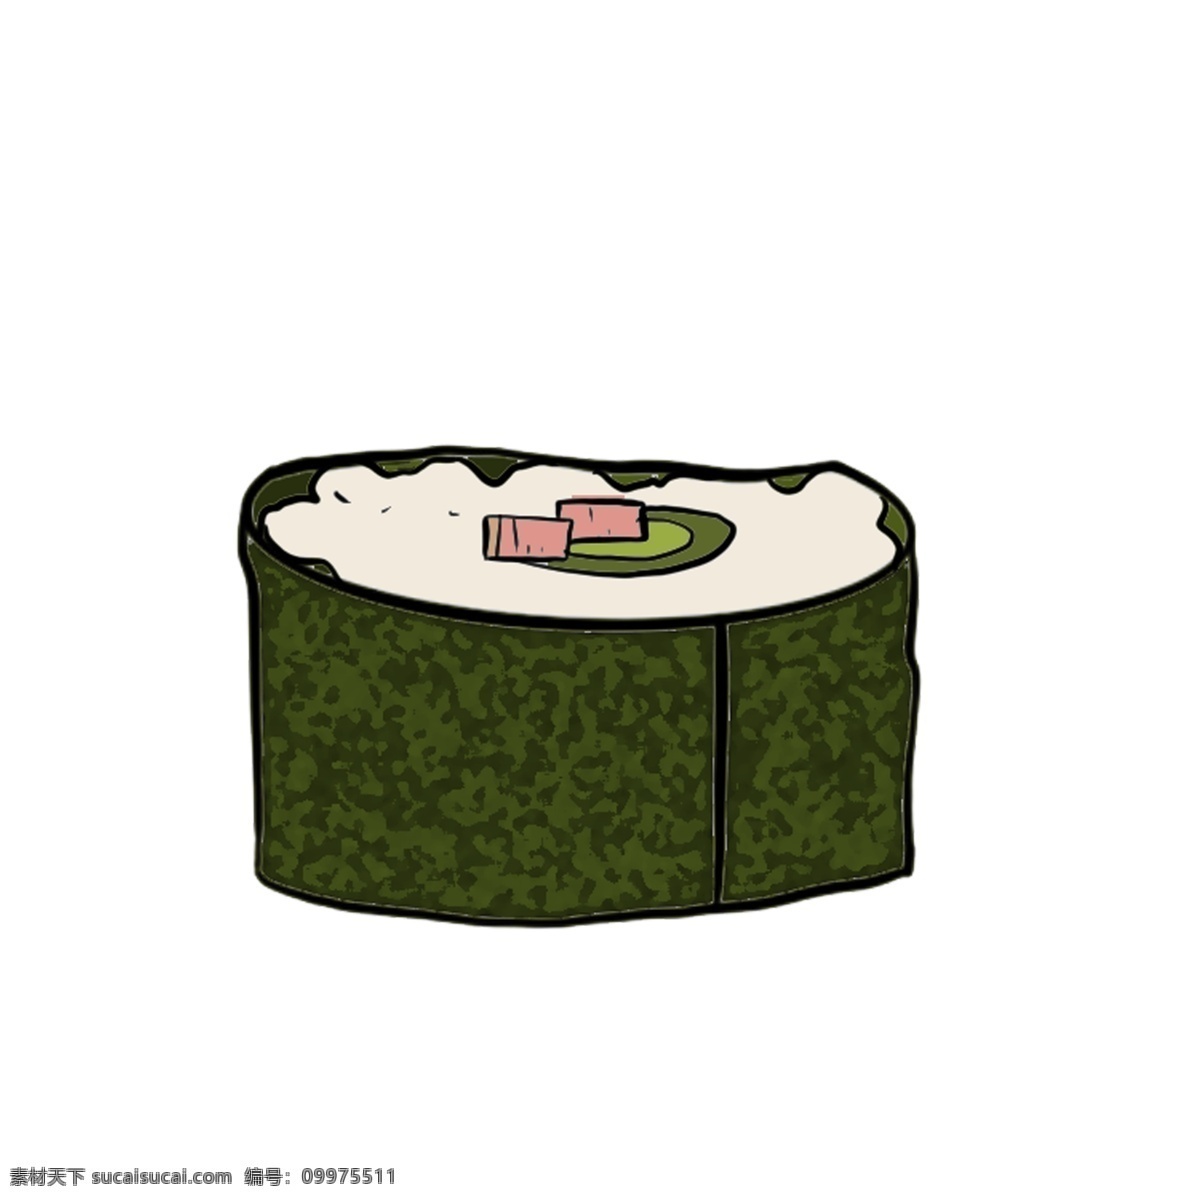 一块 海苔 寿司 插图 一块寿司 食物 一块美食 海苔寿司 食物插图 美食插画 日本食物 日本